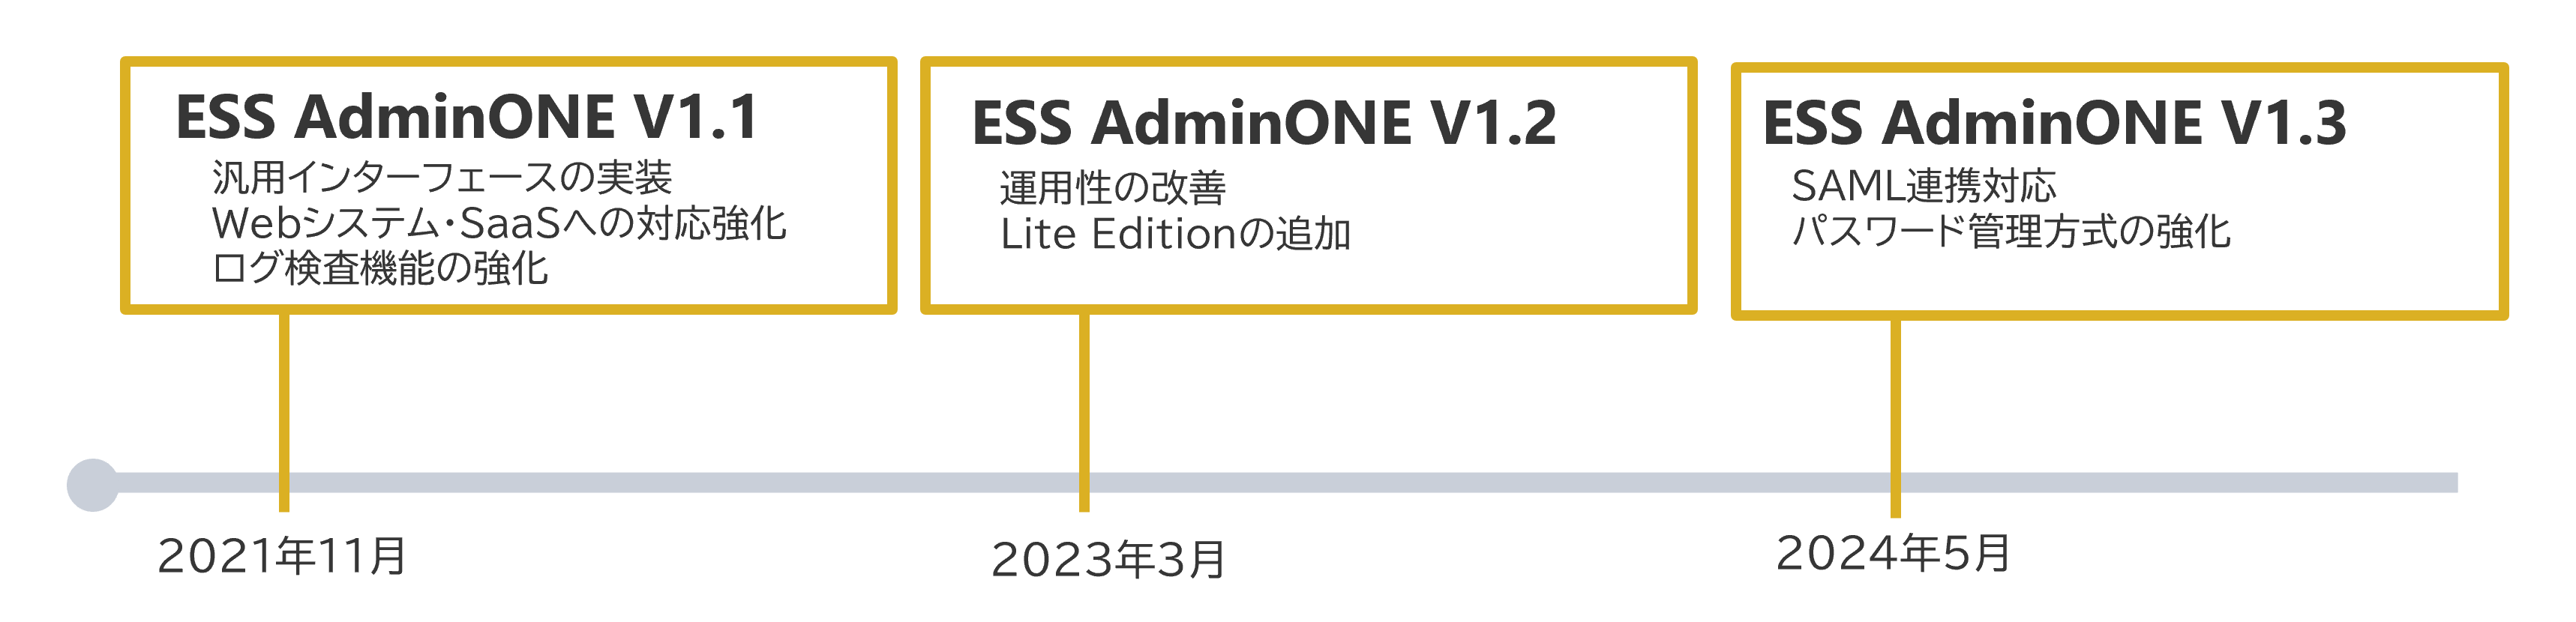 エンカレッジ・テクノロジ、
「ESS AdminONE V1.3」を5月31日より販売開始